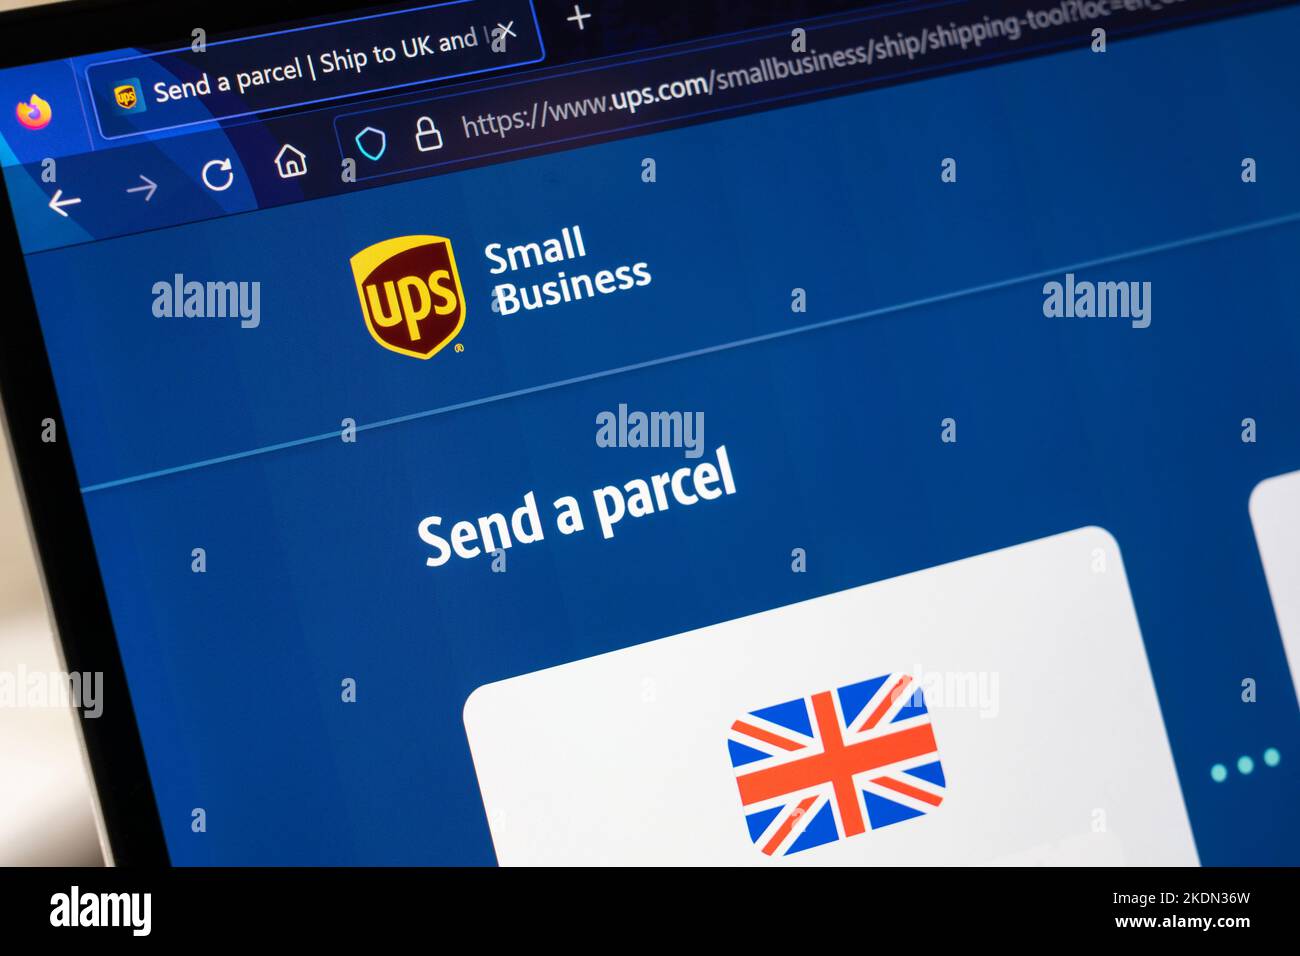 USV-Logo und Titel für Kleinunternehmen auf der UPS-Website auf der UK-Homepage mit einem Bild der britischen Flagge. Konzept: Internationale Paketzustellung Stockfoto